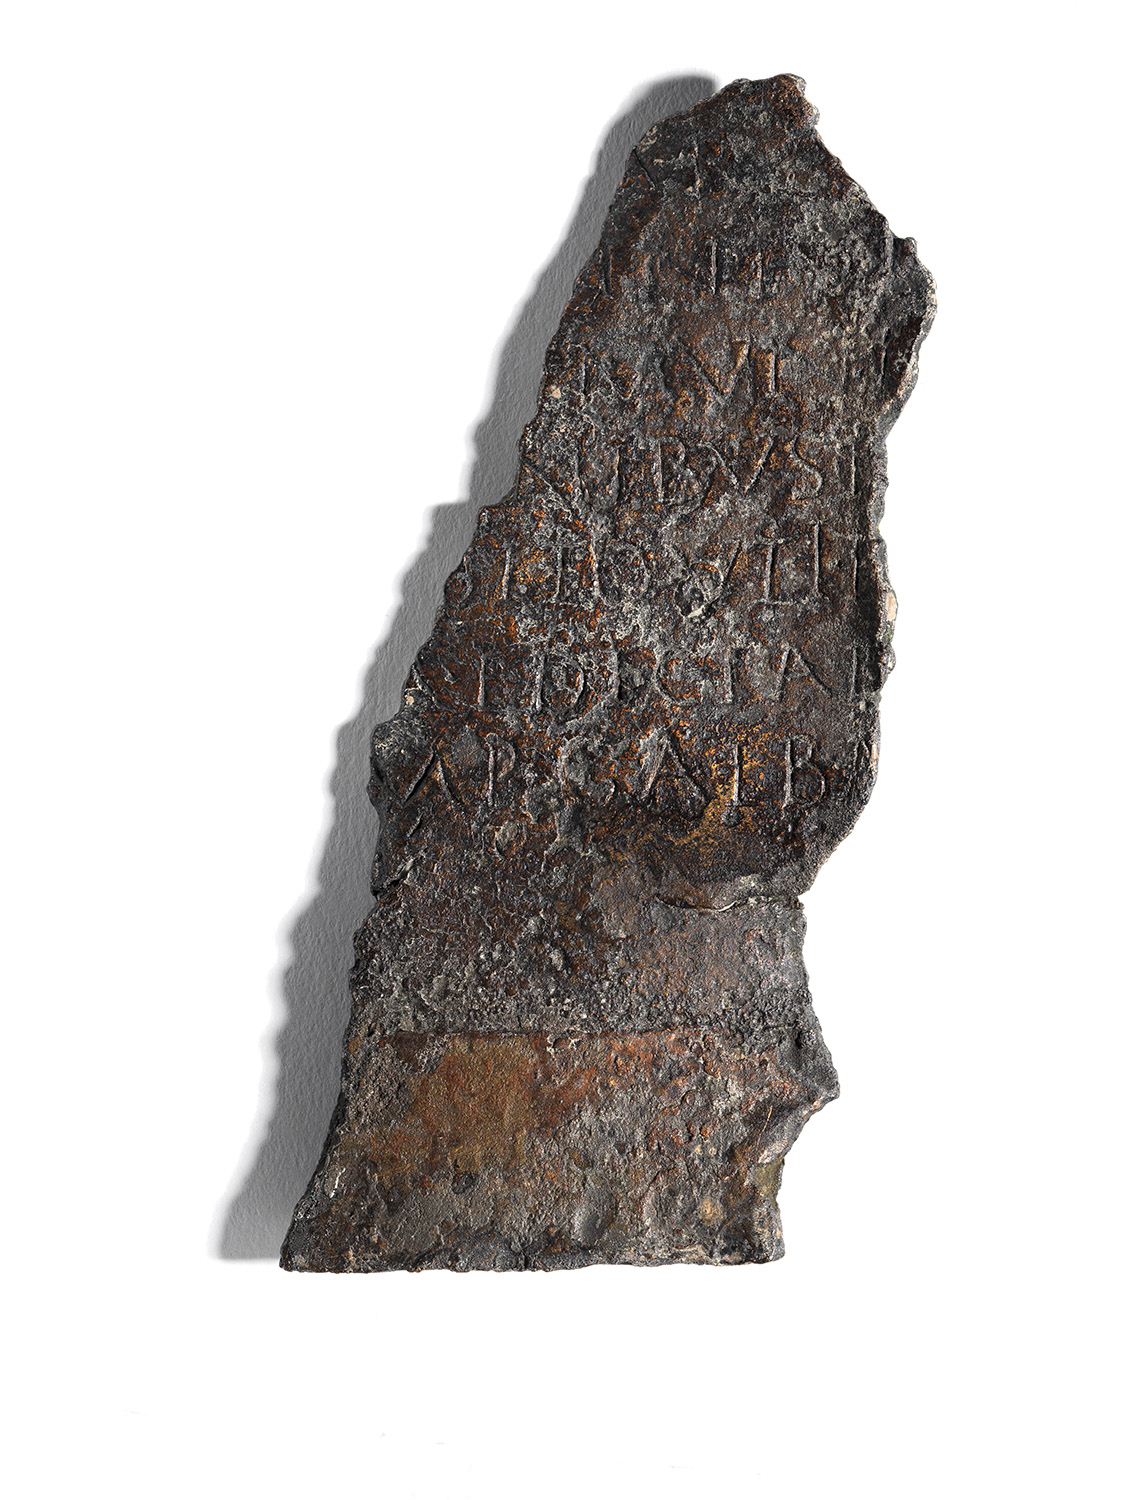 Hochformatiges Stück einer Bronzetafel mit Schriftzug zum Stadtrecht von Vindobona und der Erwähnung des Namens von Kaisers Galba 